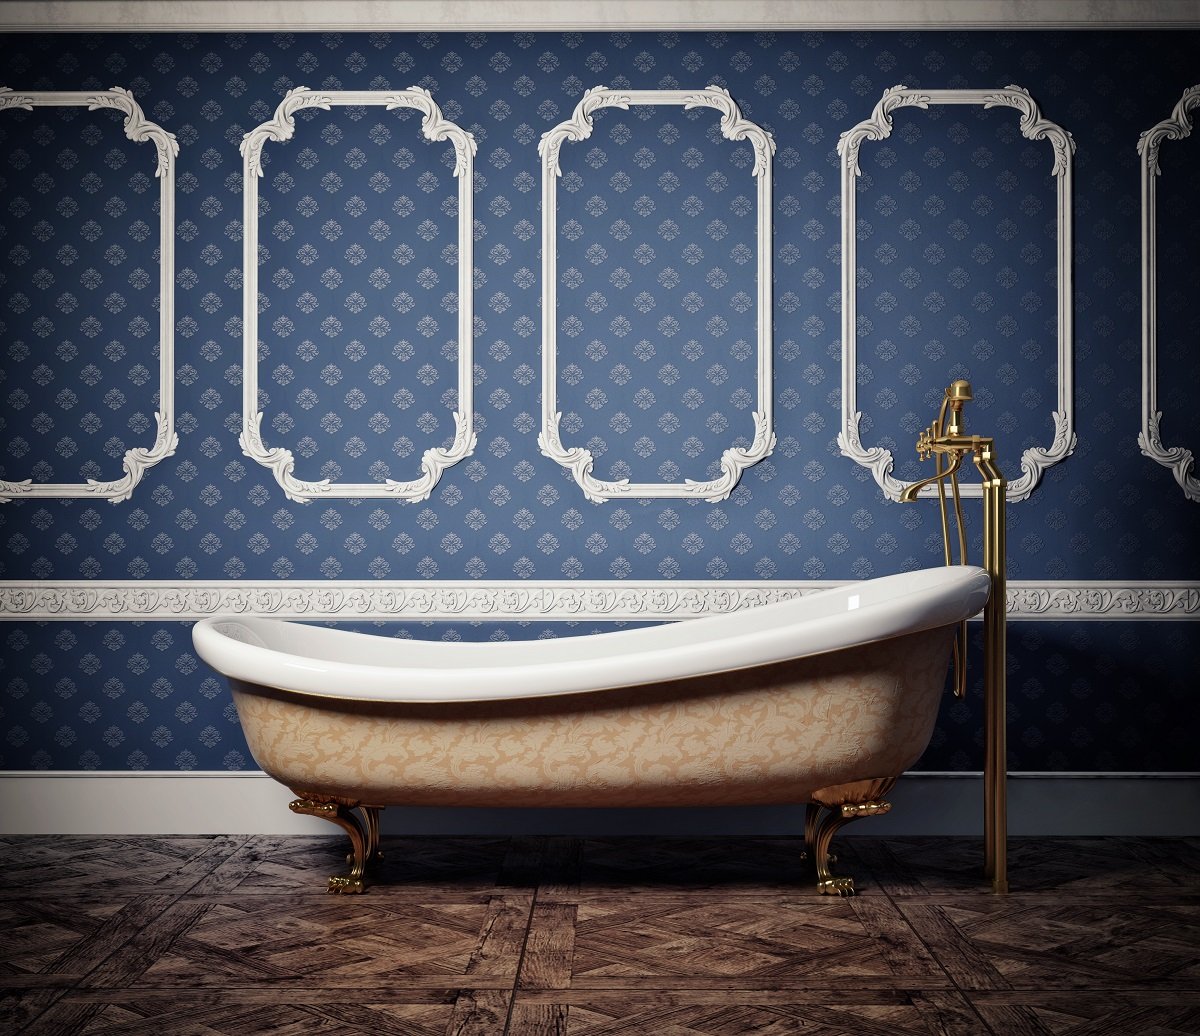 ¿Por qué todos pegan los azulejos en el baño cuando hay mejores